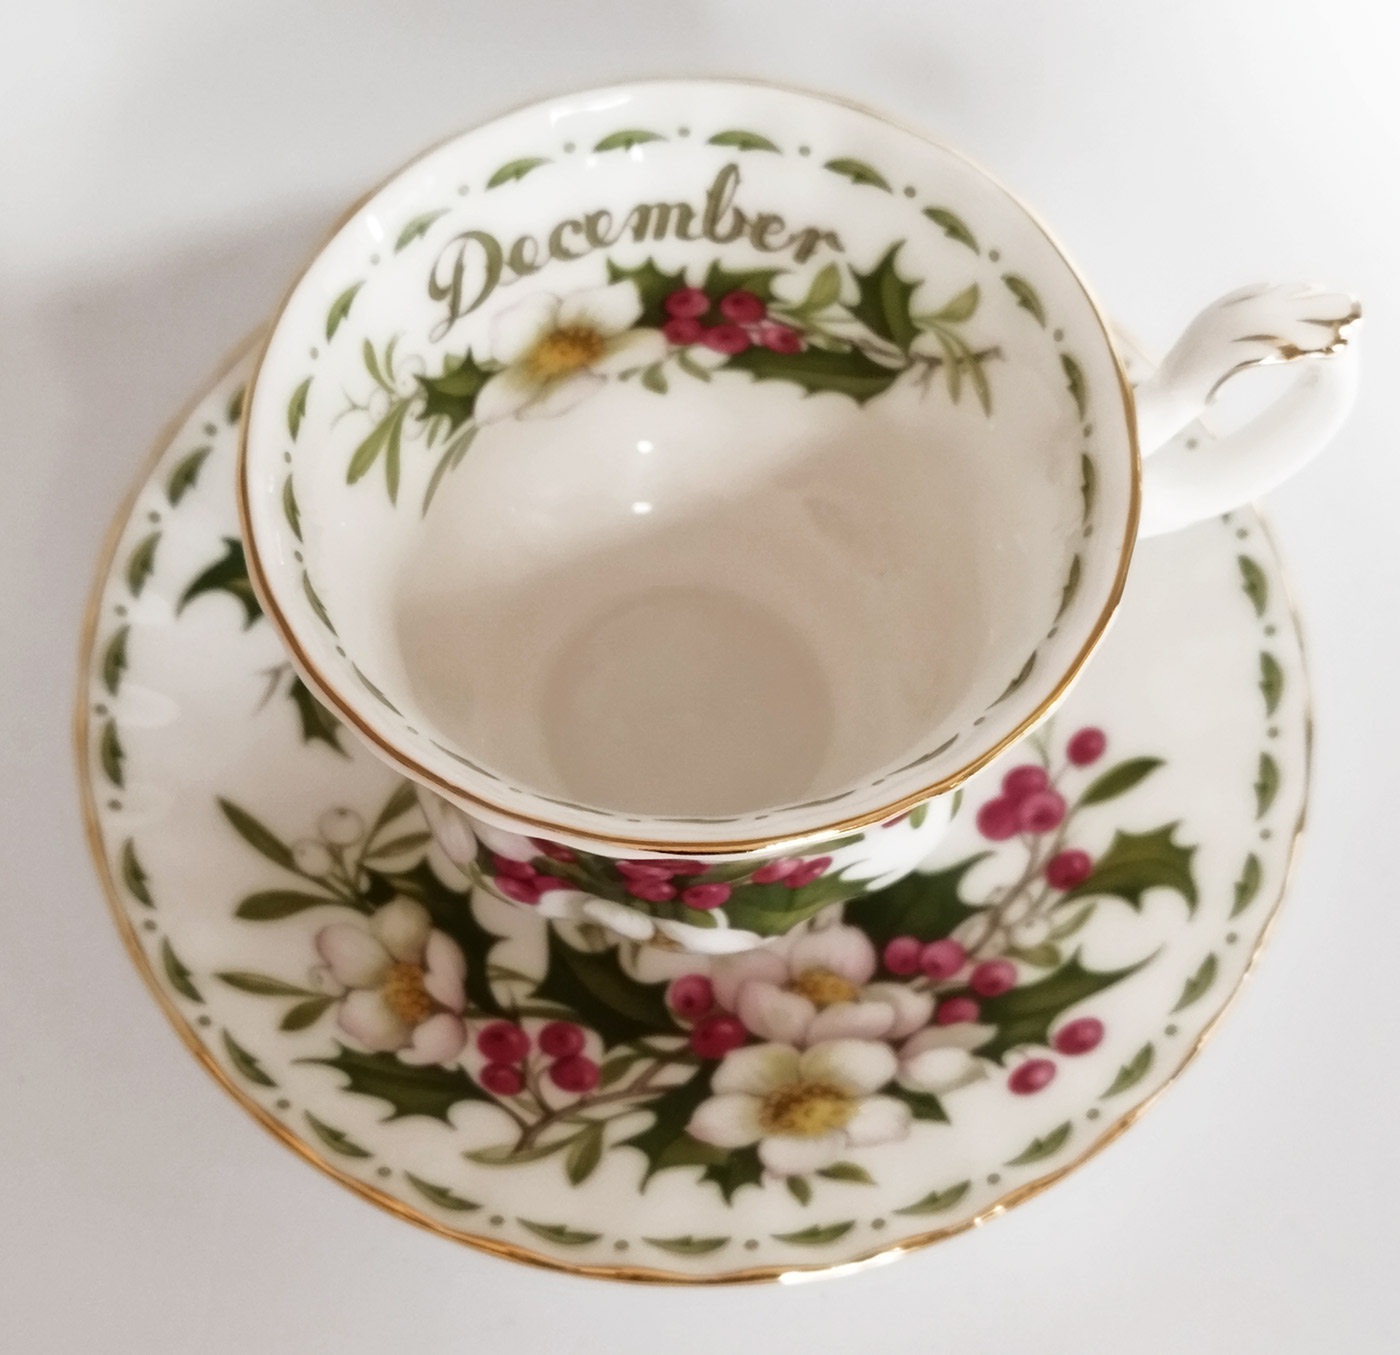 Royal Albert - Tazza da tè fiore del mese dicembre - Collezionismo